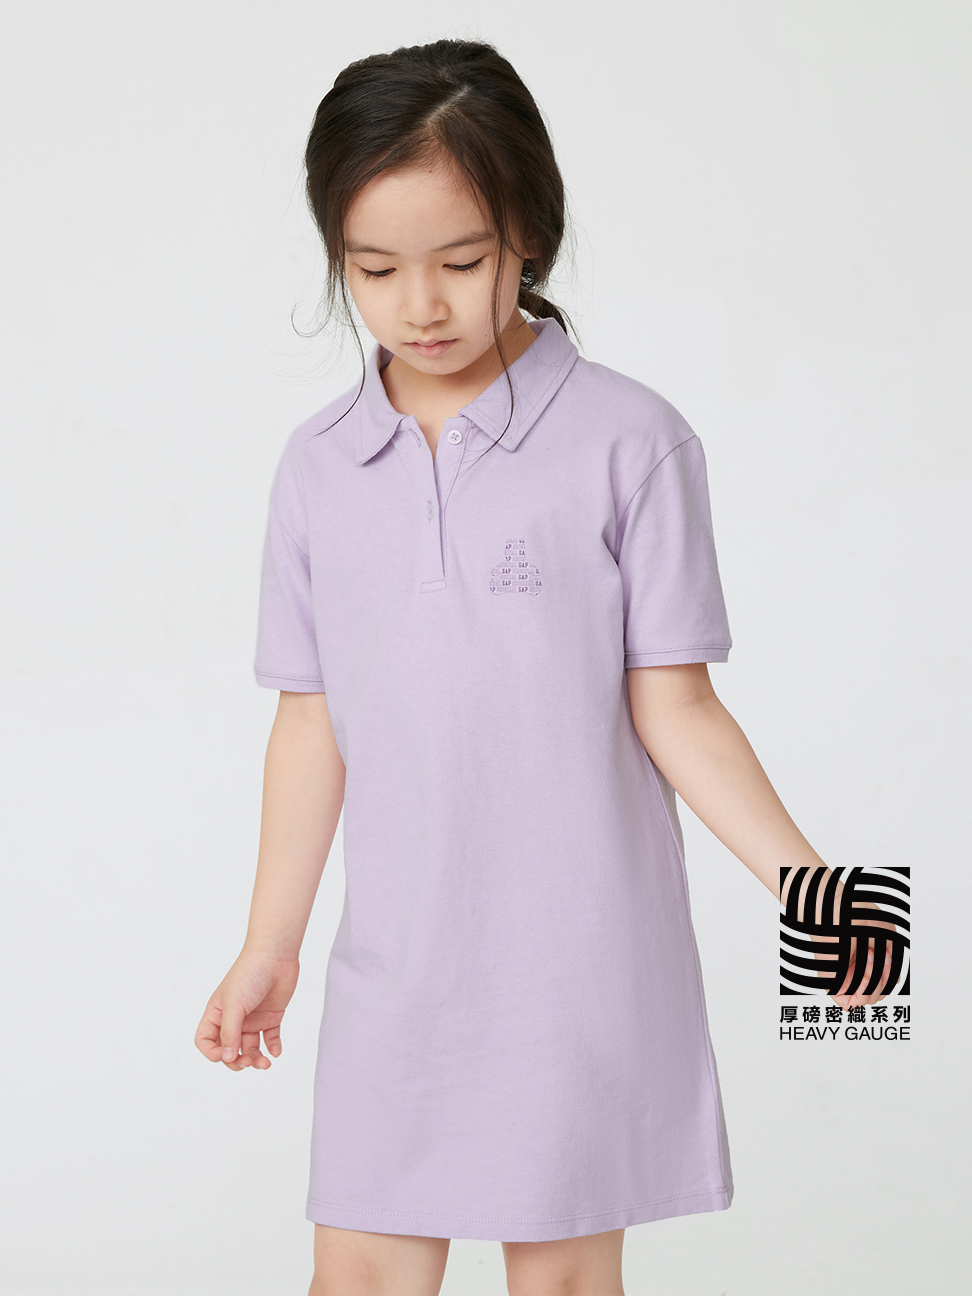 女童|Logo小熊短袖洋裝-淺紫色